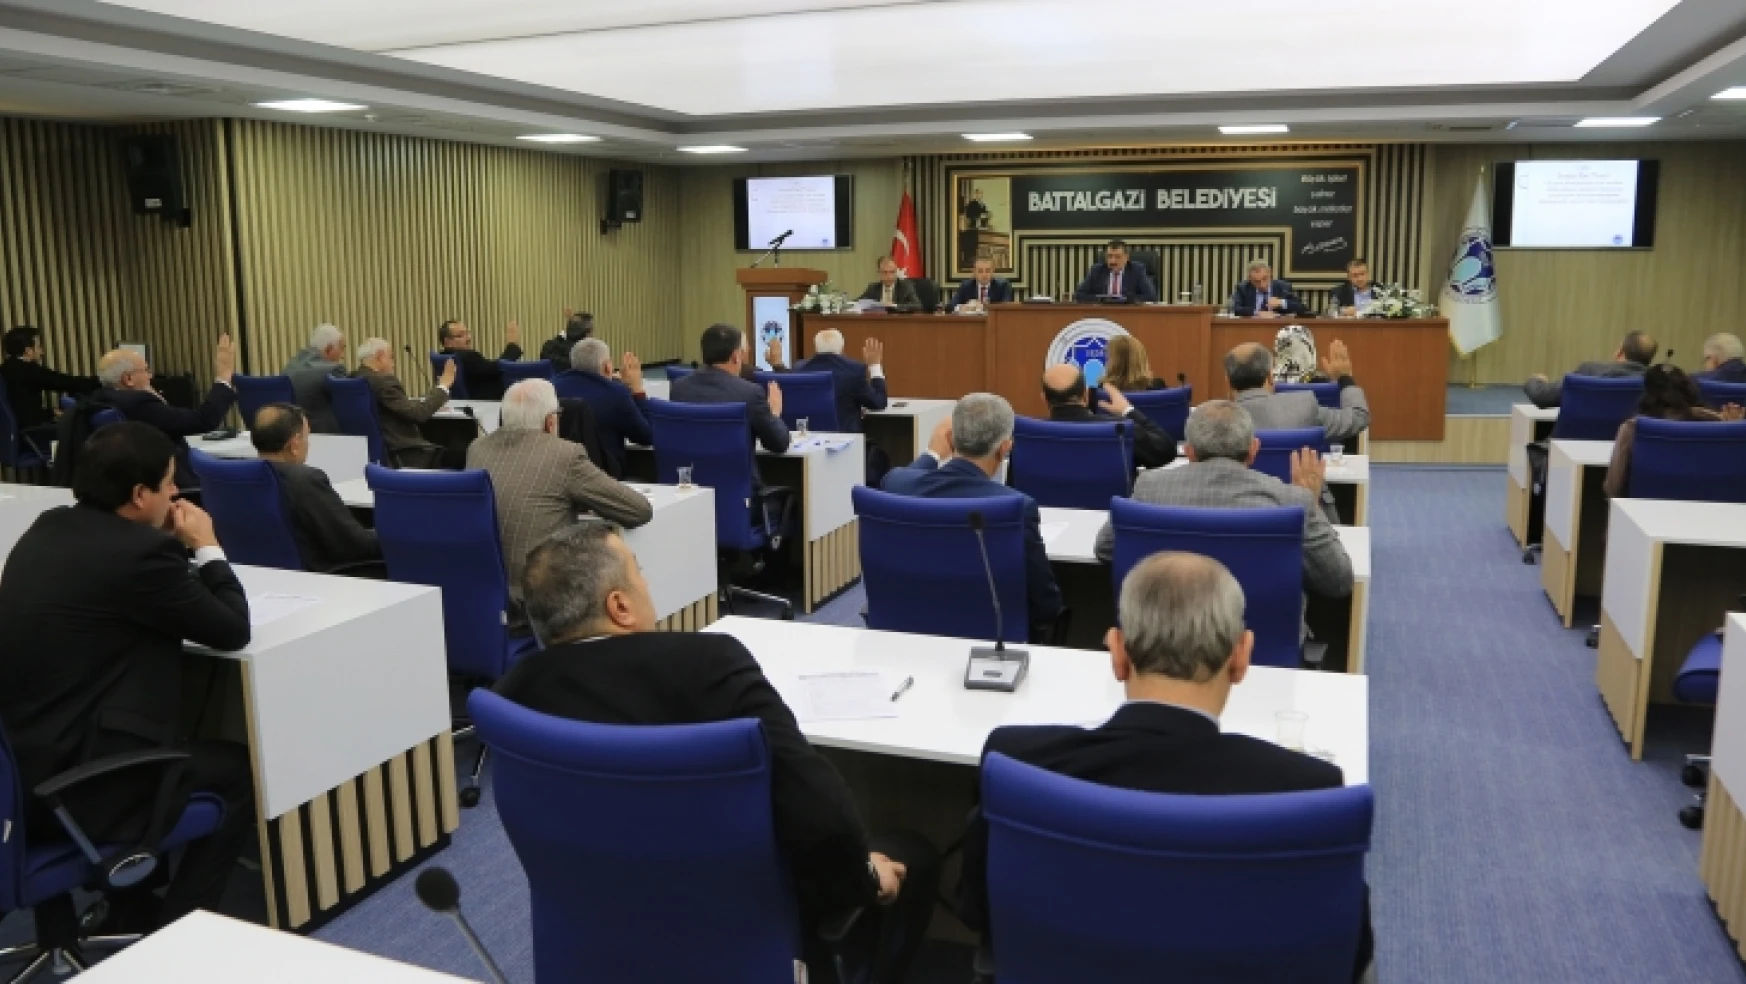 Battalgazi Meclisi, 2017 Yılının Son Toplantısını Gerçekleştirdi